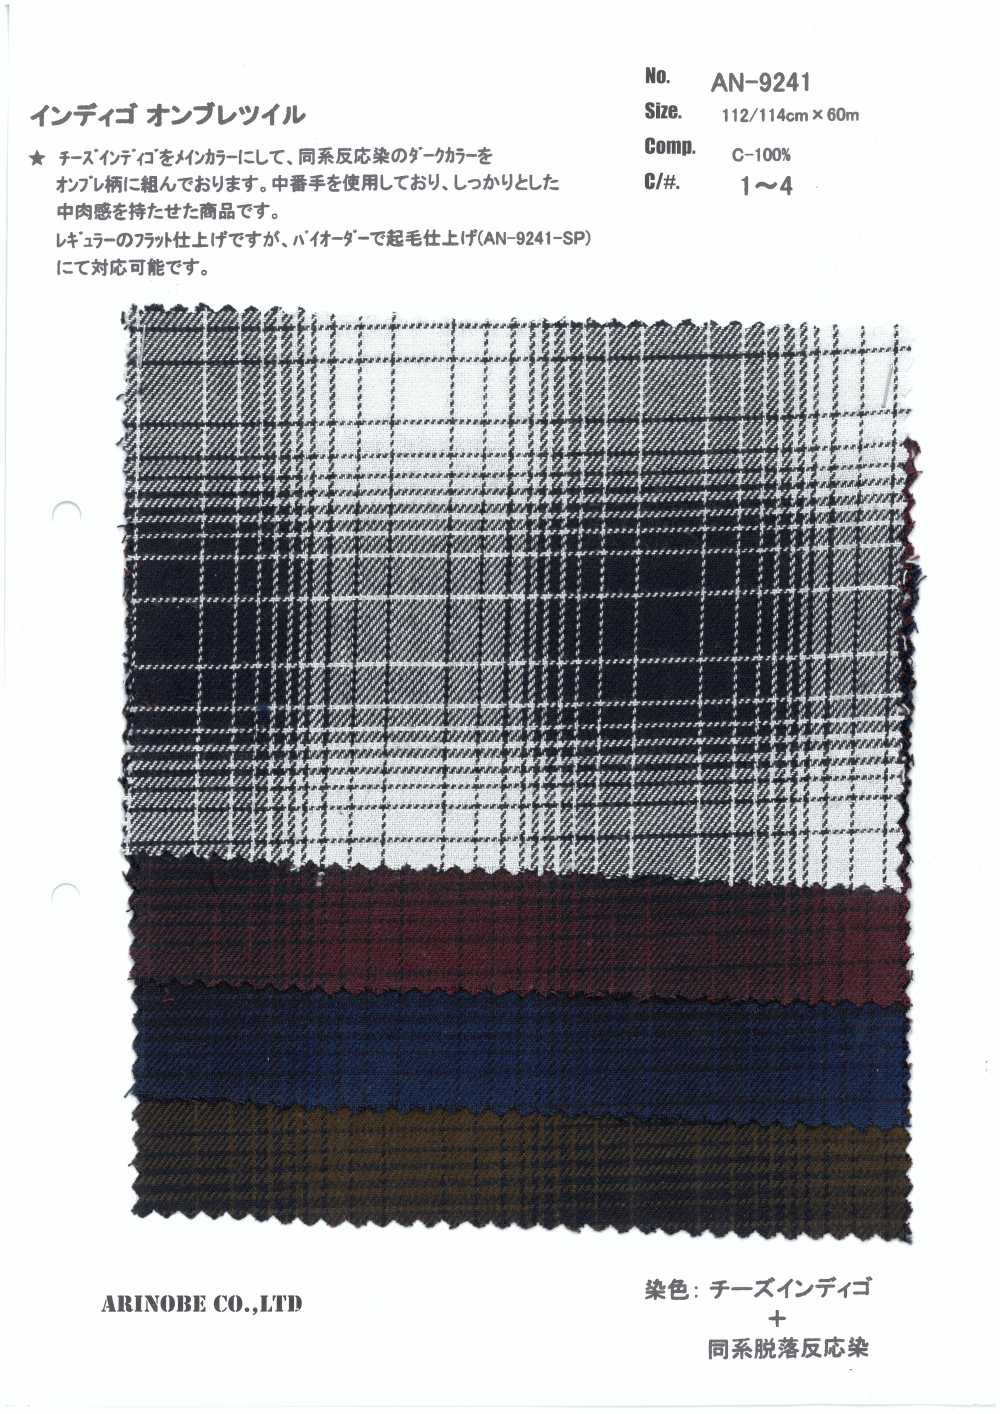 AN-9241 Indigo Ombre Twill[Textile / Fabric] ARINOBE CO., LTD.